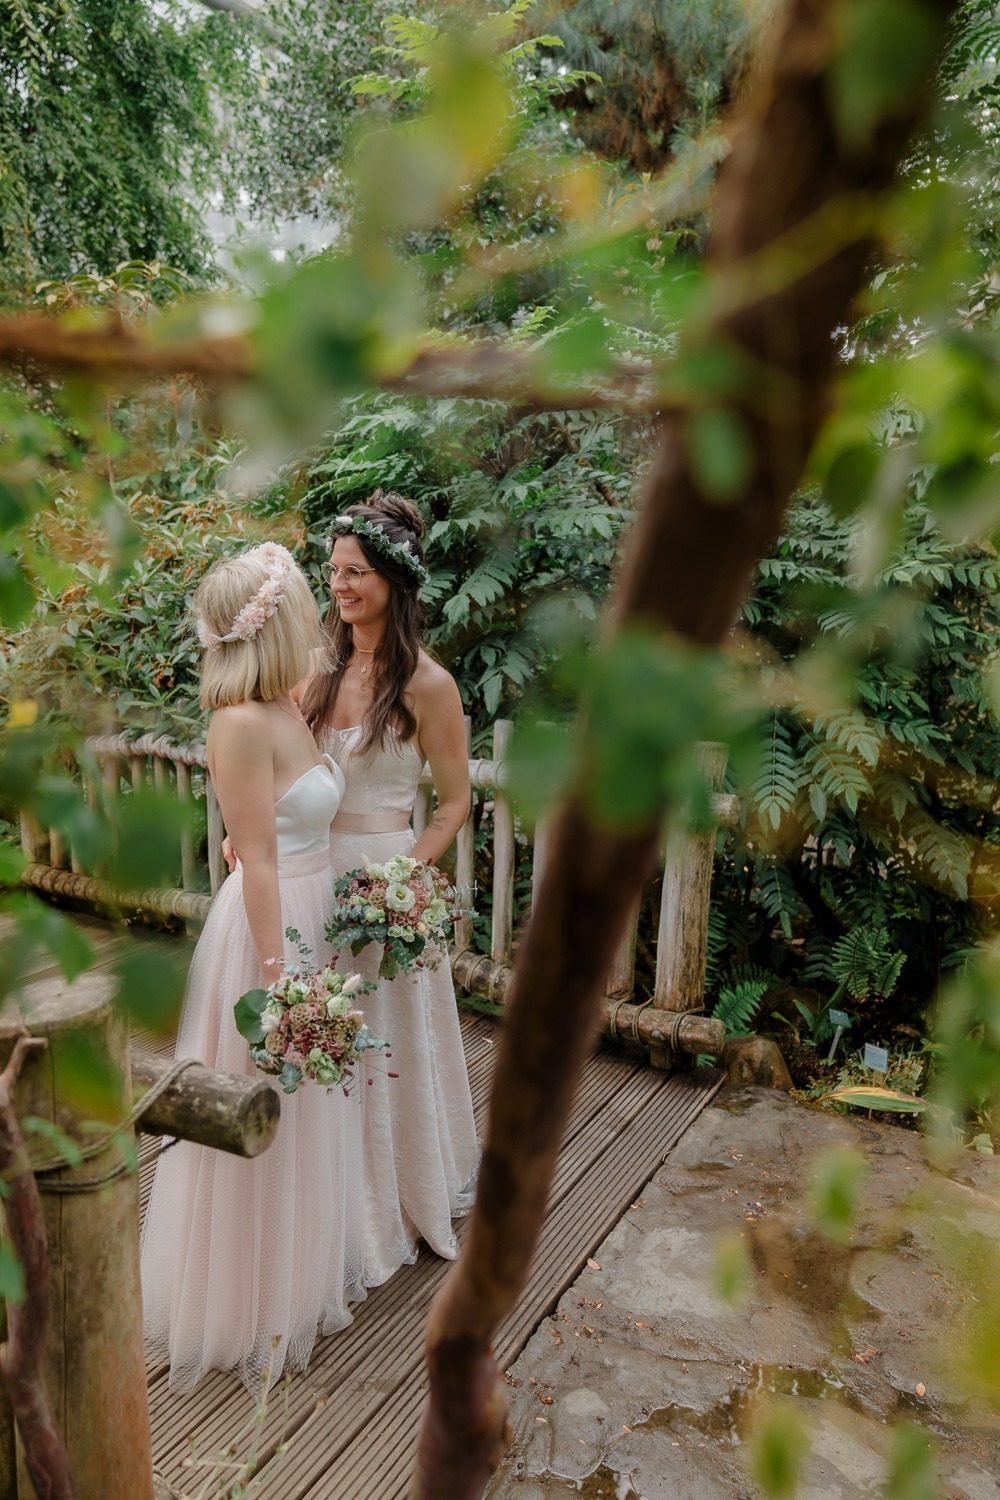 Brautpaarfotos Botanika, Rhododendronpark Bremen, zwei Bräute, gleichgeschlechtliche Hochzeit